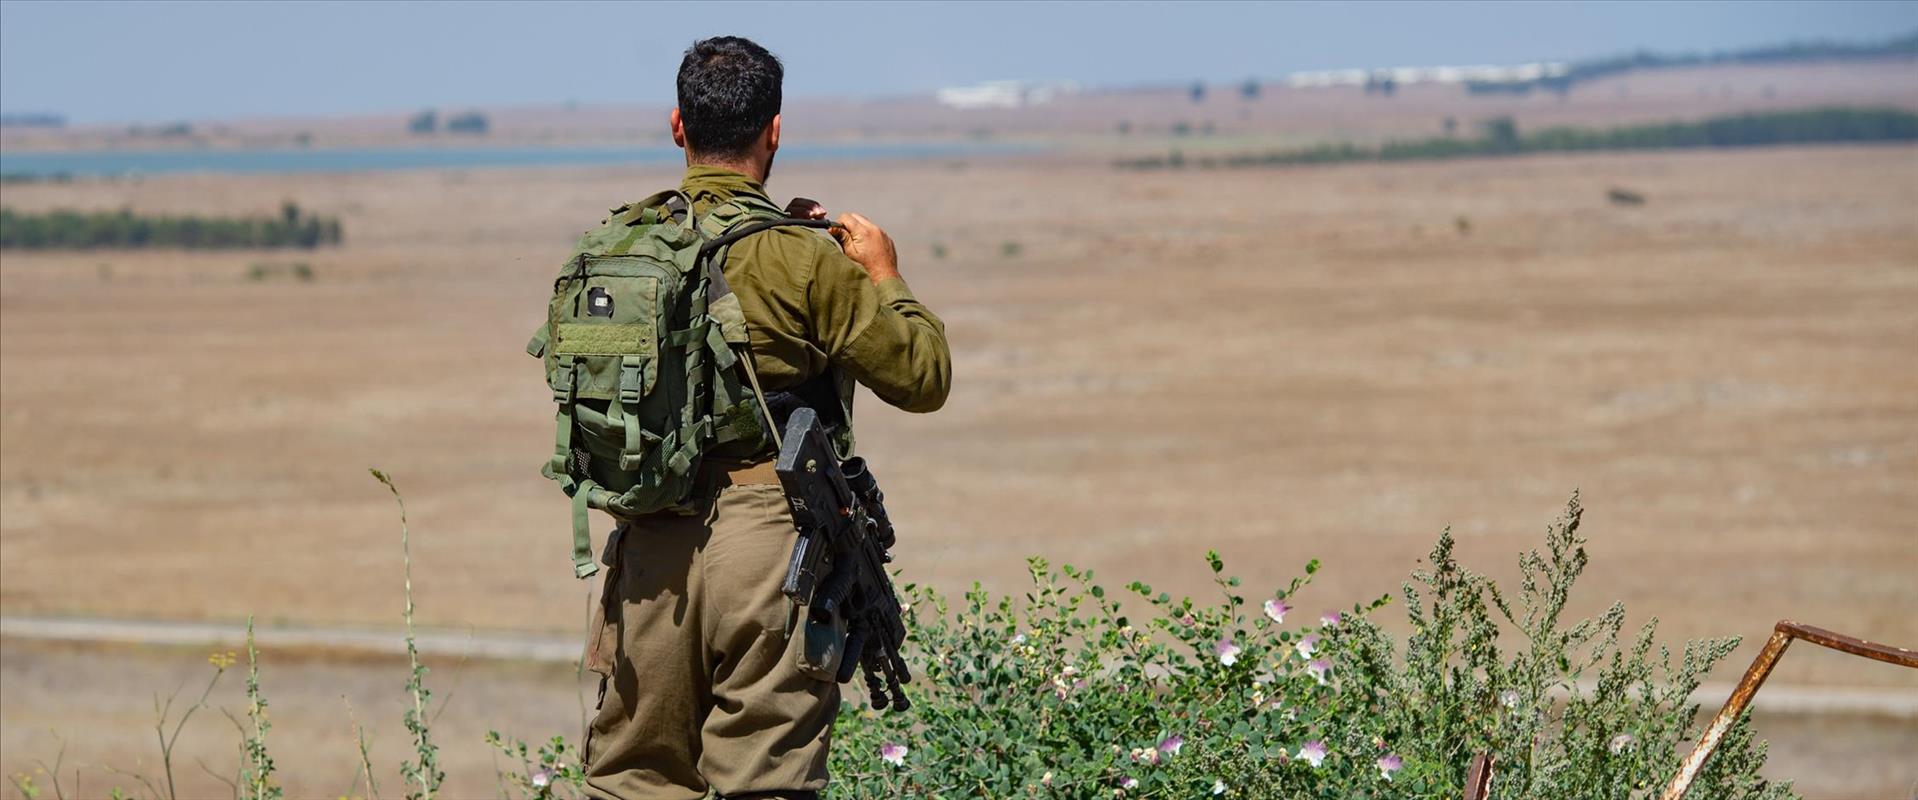 חייל צה"ל בגבול סוריה